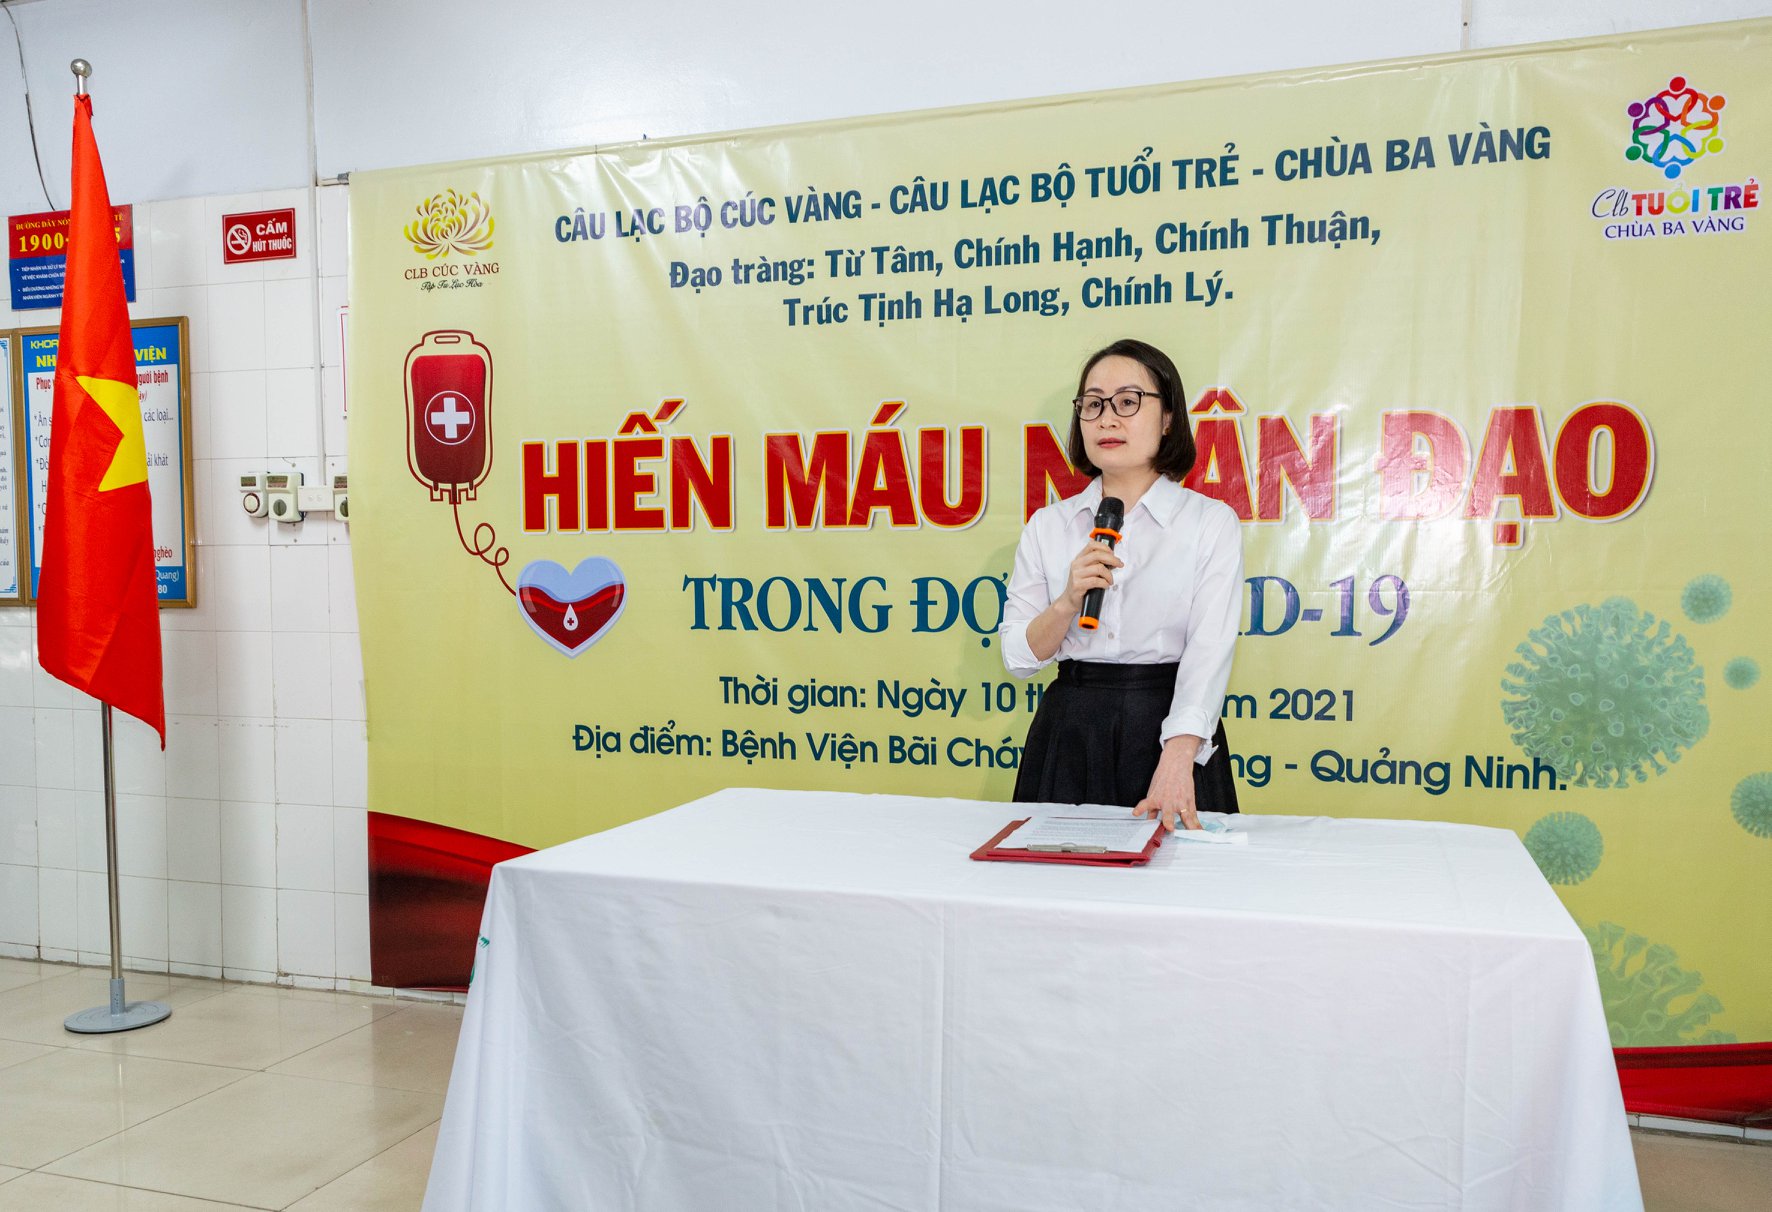 Bà Đinh Thị Lan Anh - Phó Giám đốc Bệnh viện Bãi Cháy đã phát biểu và gửi lời cảm ơn tới tấm lòng hảo tâm của các Phật tử chùa Ba Vàng